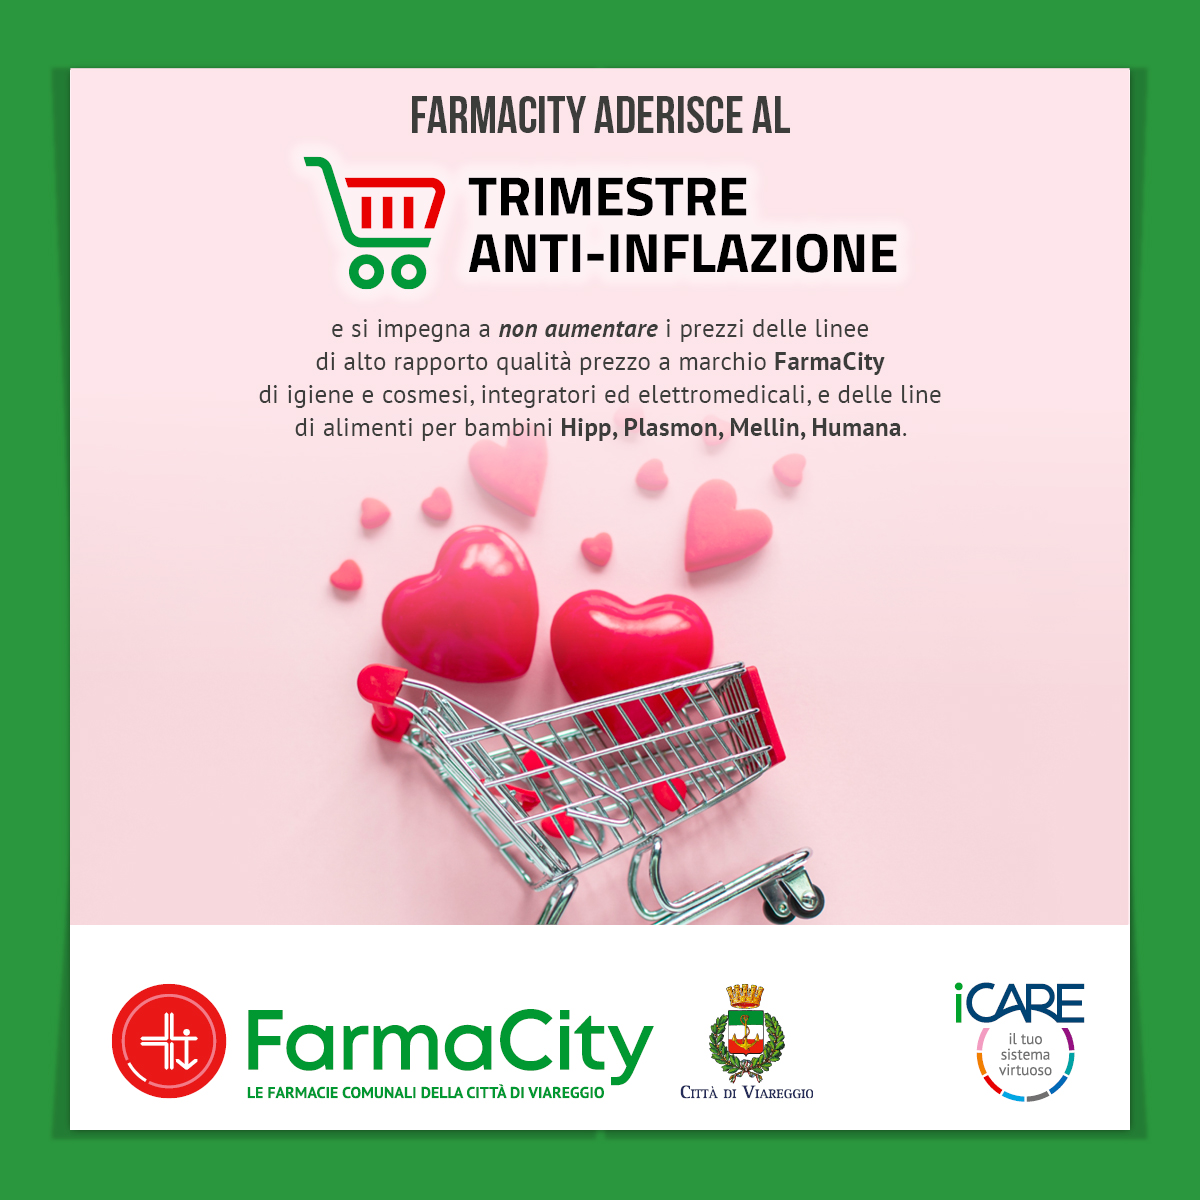 FarmaCity aderisce al Trimestre antinflazione